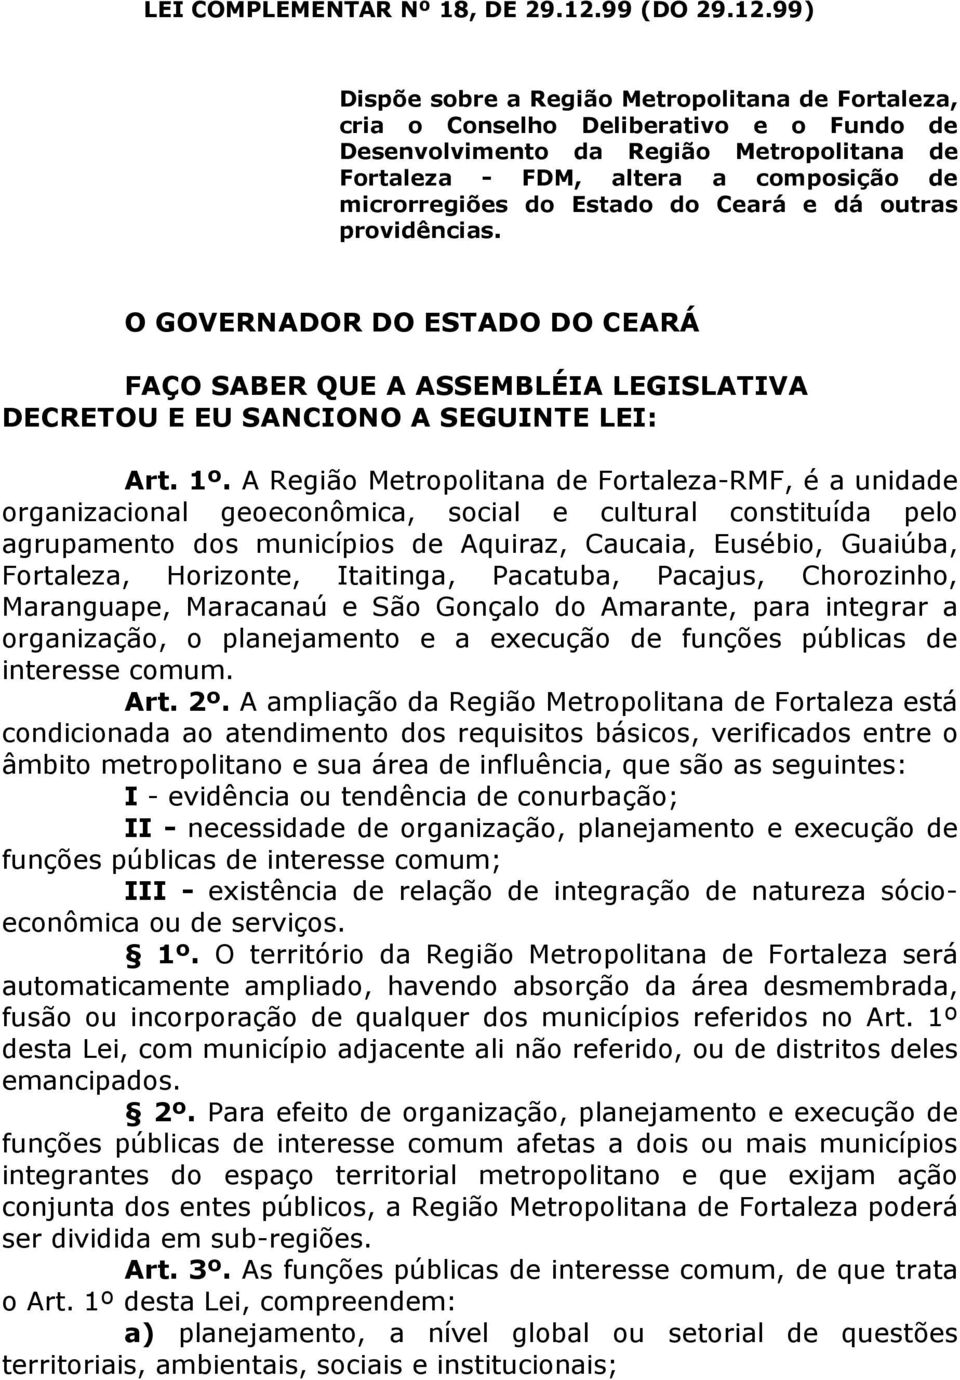 99) Dispõe sobre a Região Metropolitana de Fortaleza, cria o Conselho Deliberativo e o Fundo de Desenvolvimento da Região Metropolitana de Fortaleza - FDM, altera a composição de microrregiões do